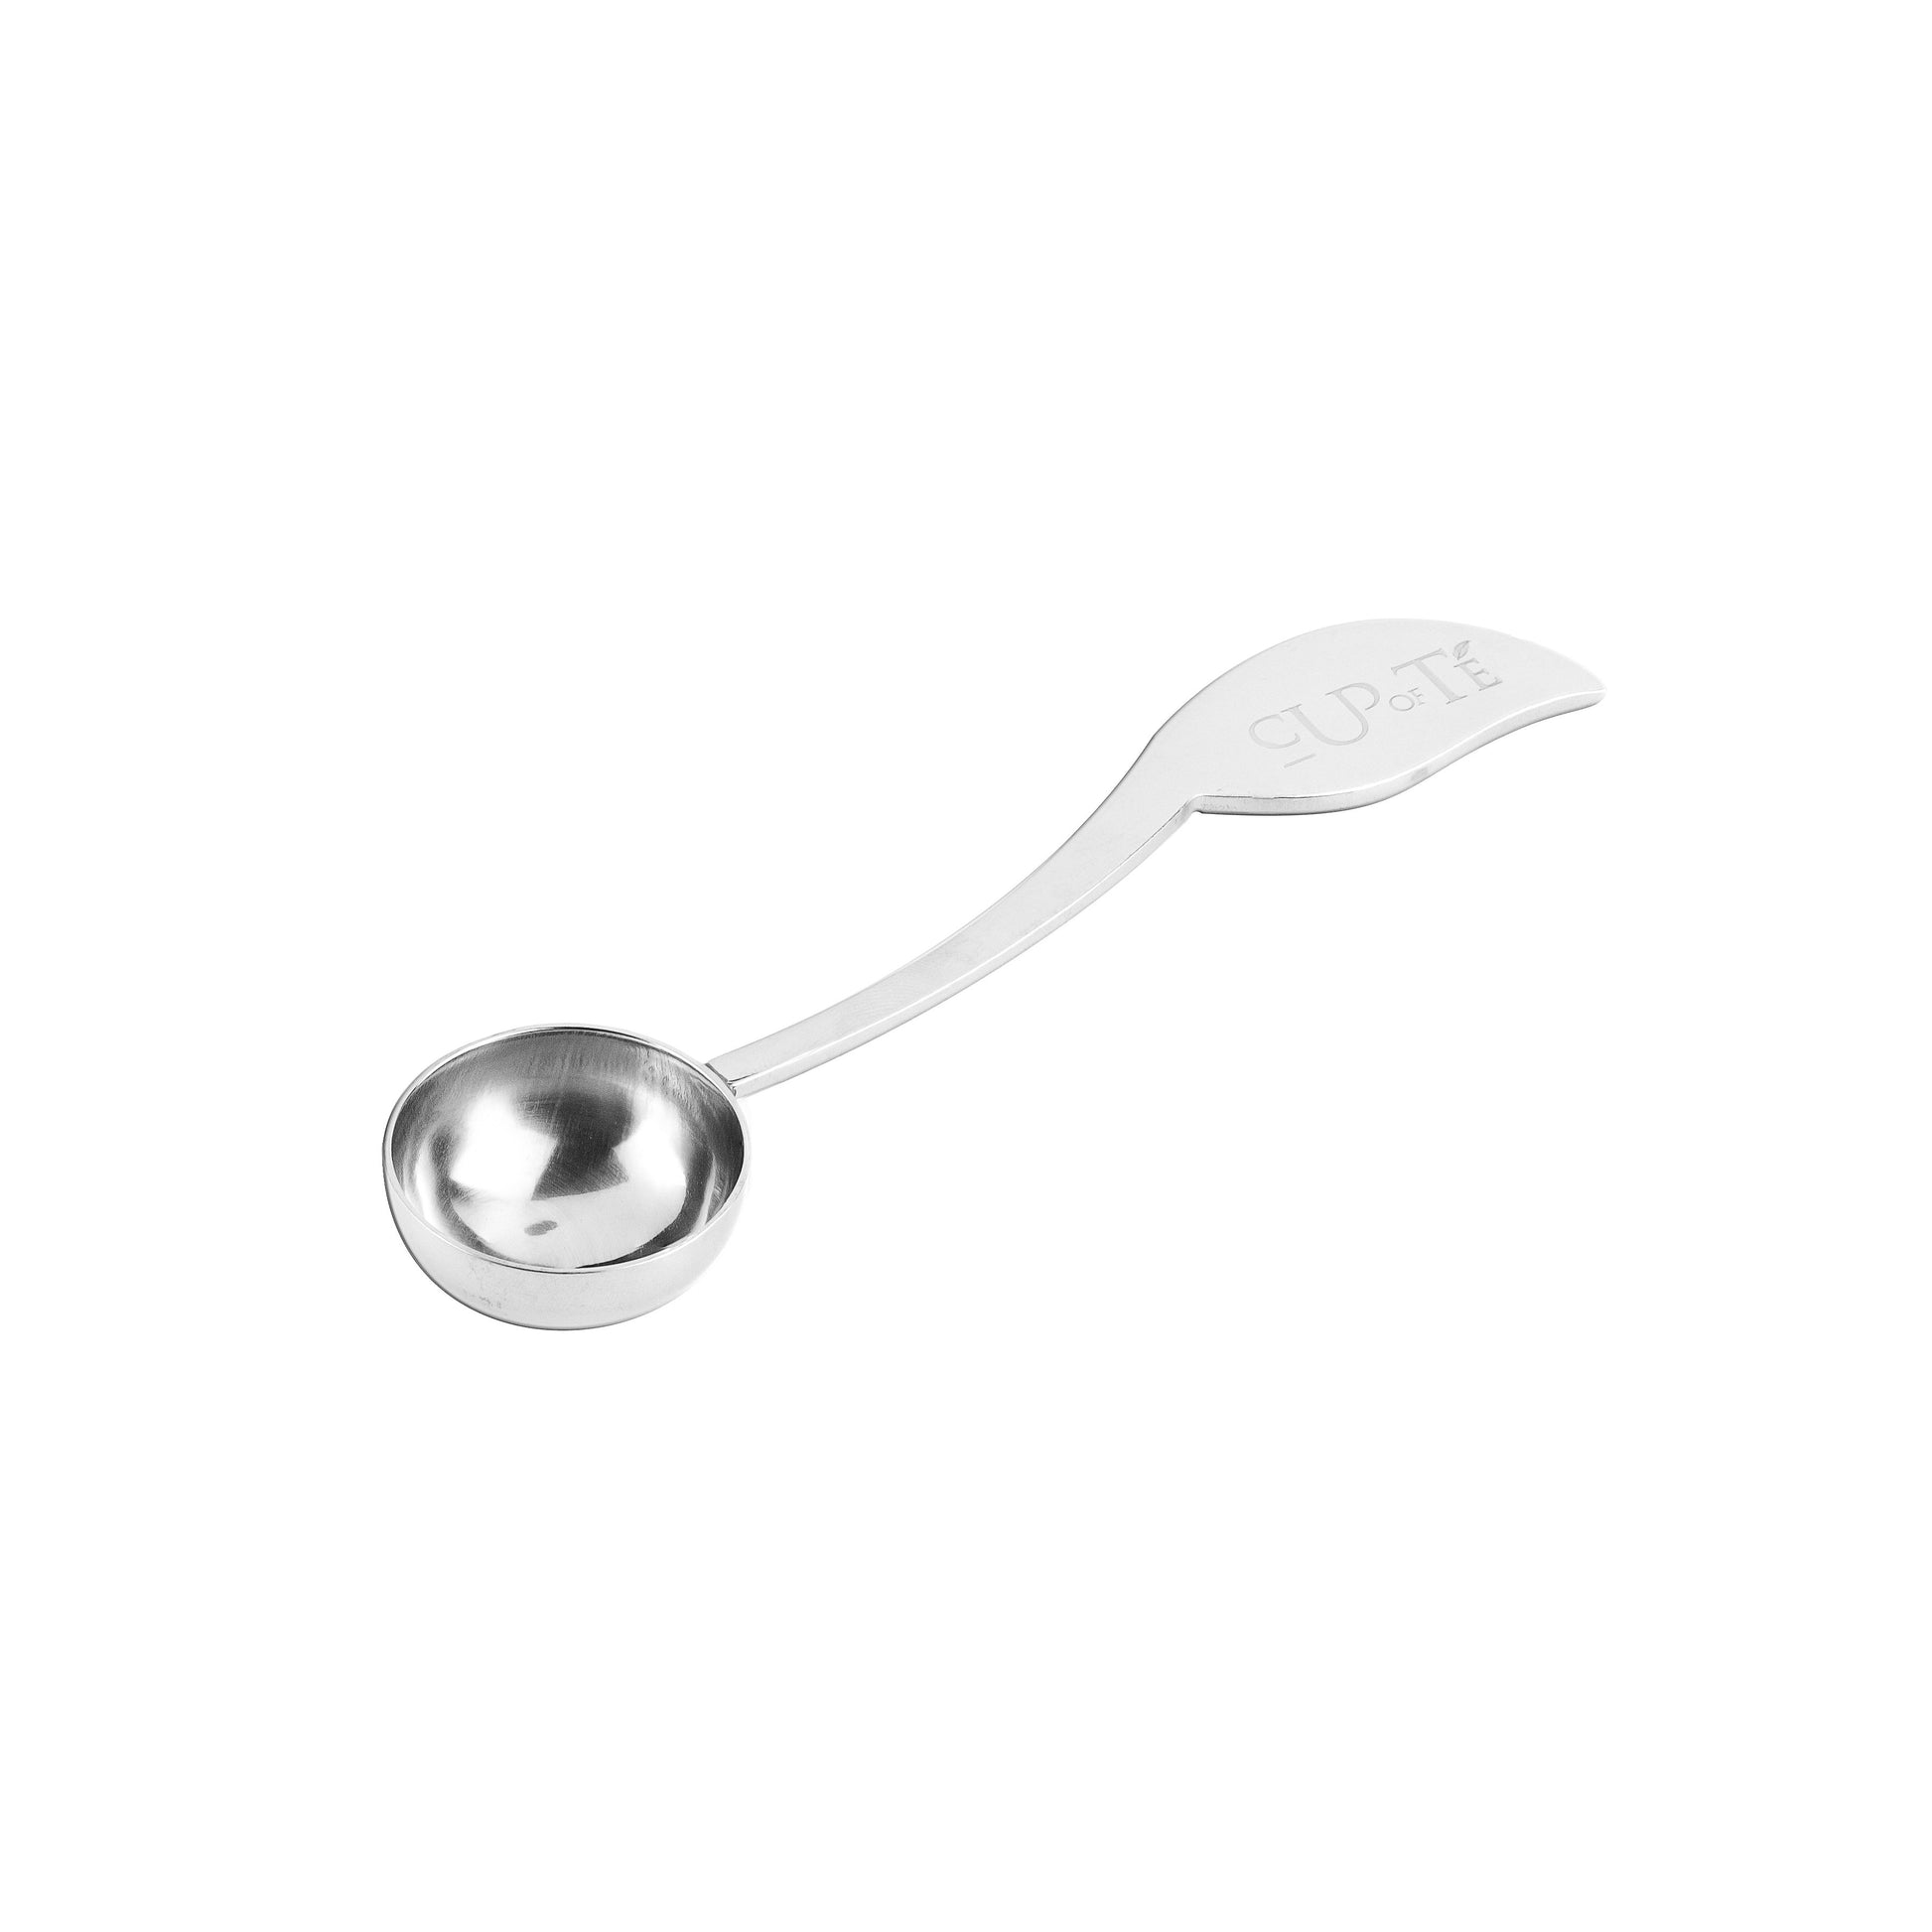 Leaf Sweetener Spoon - Cup of Té